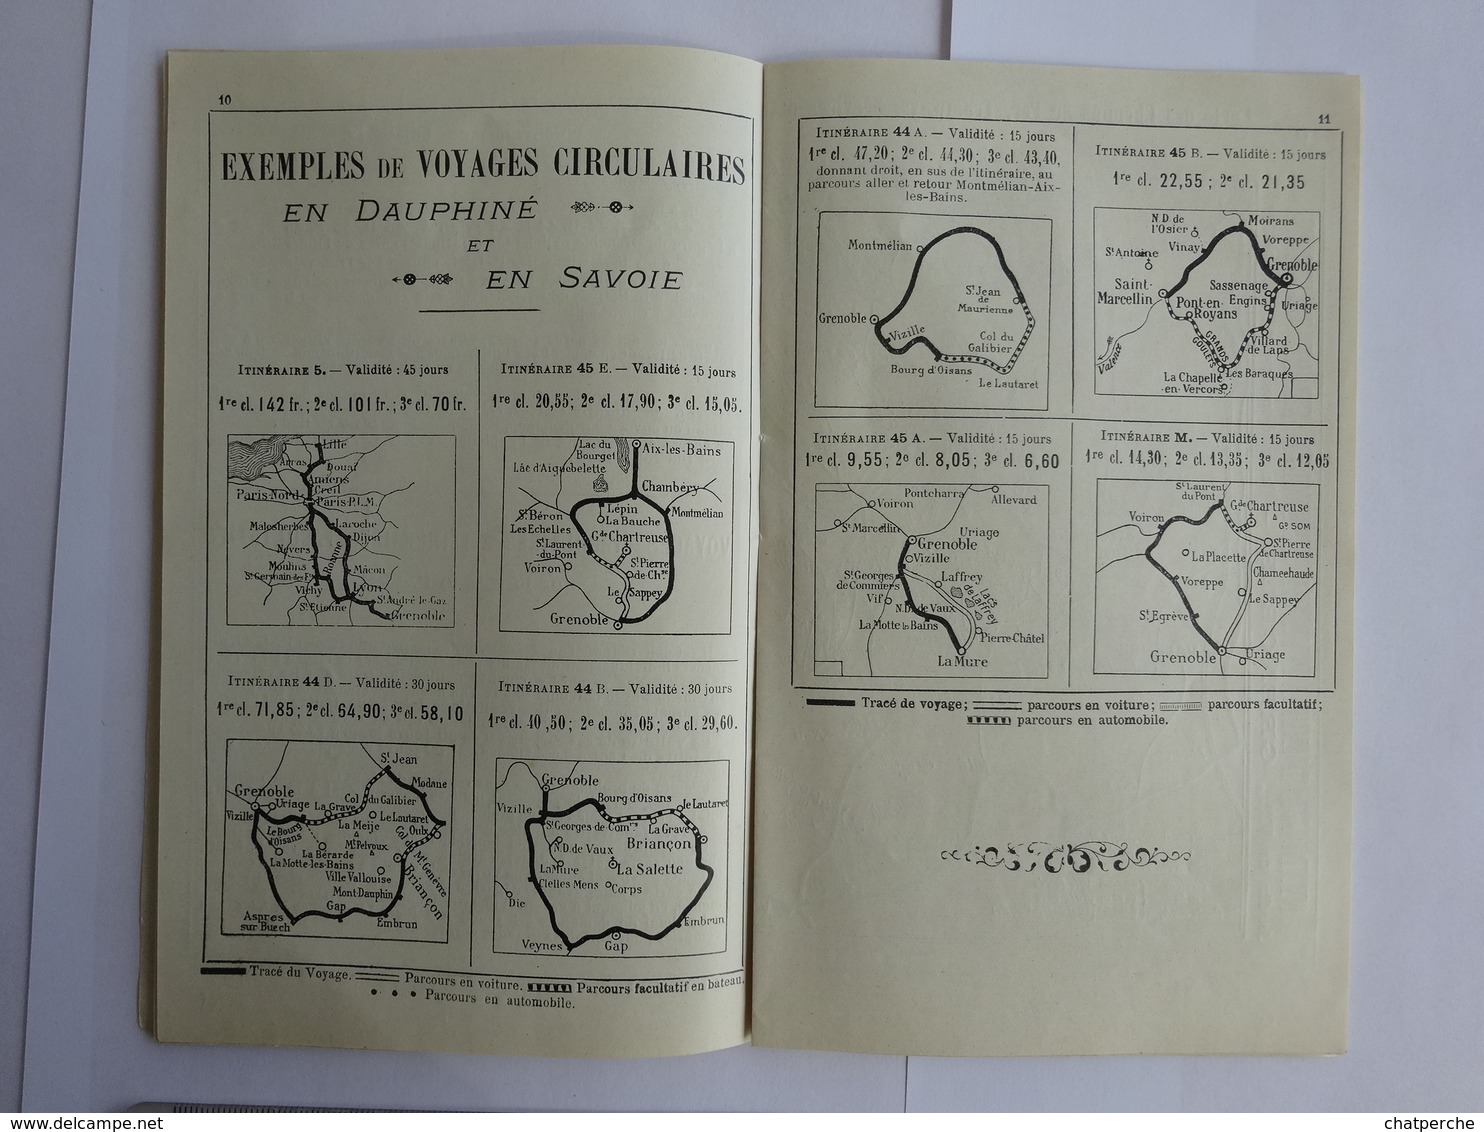 DEPLIANT HORAIRES EXCURSIONS EN DAUPHINE  ETE 1912  CHEMINS DE FER PLM SERVICES AUTOMOBILES